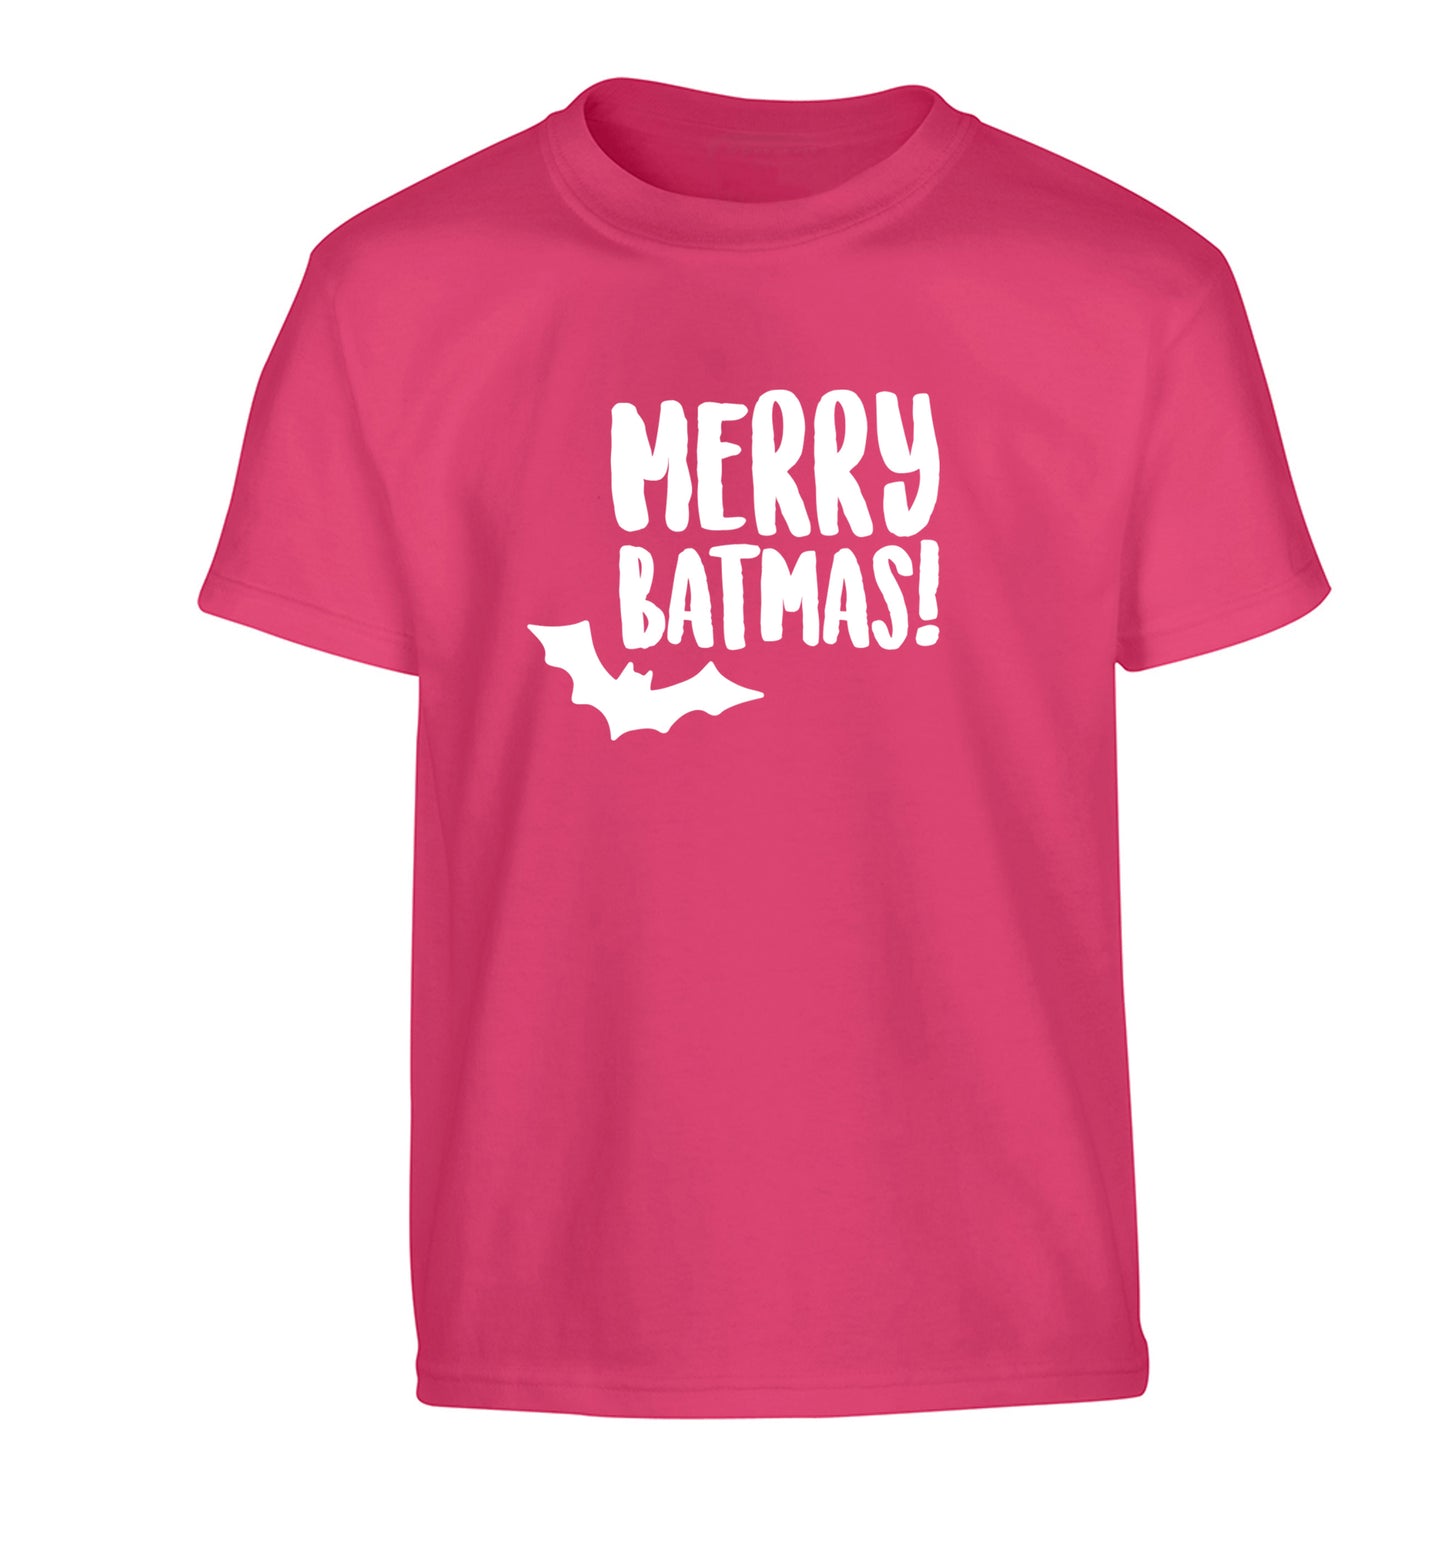 Merry Batmas Children's pink Tshirt 12-14 Years